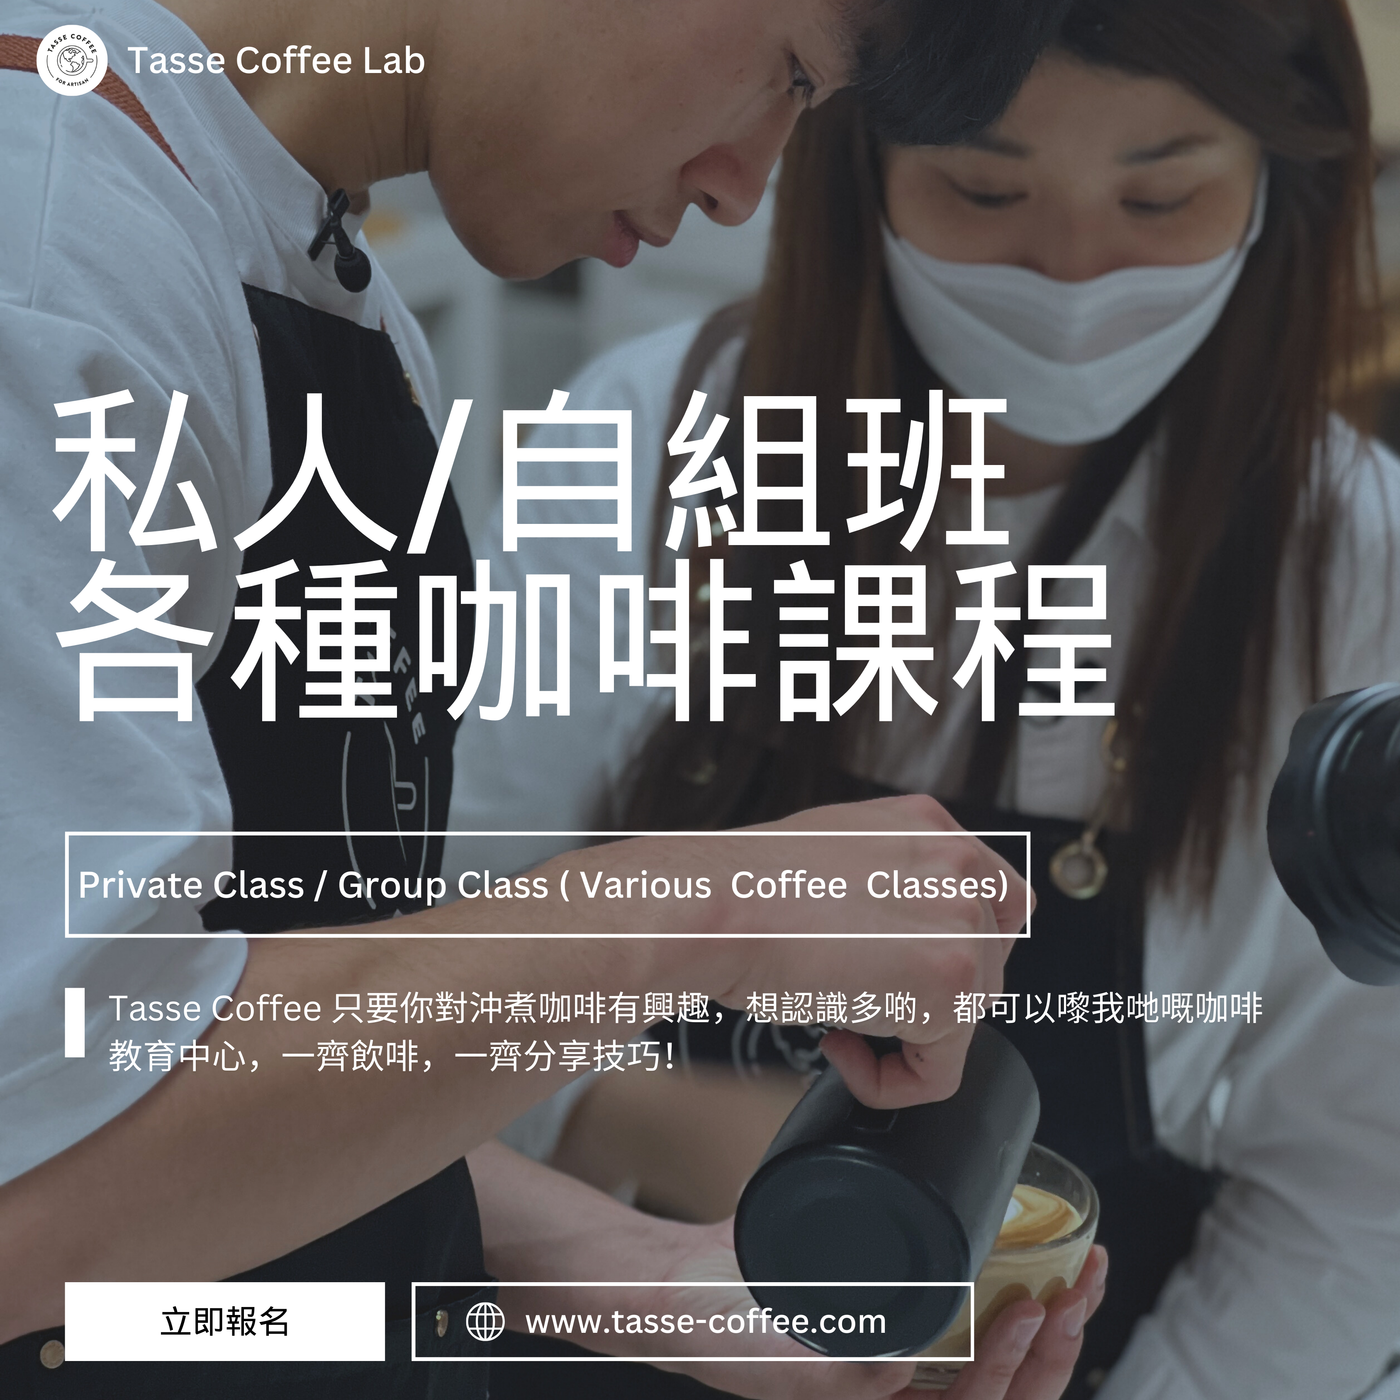 私人班 / 團體班｜各種咖啡課程